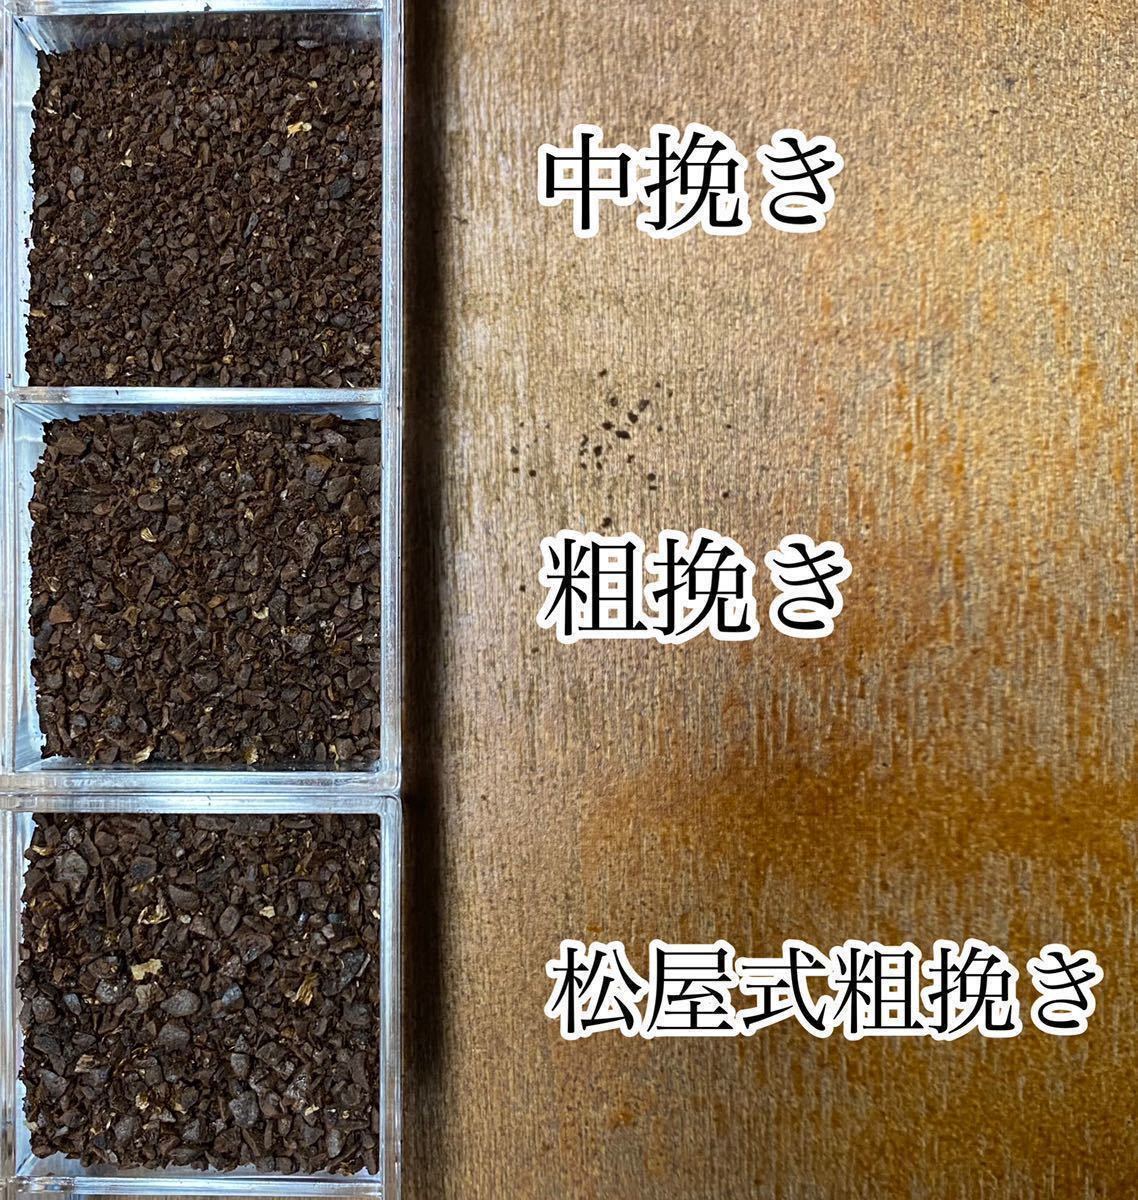 お試しセットNo.1 自家焙煎コーヒー豆3種(100g×3個)